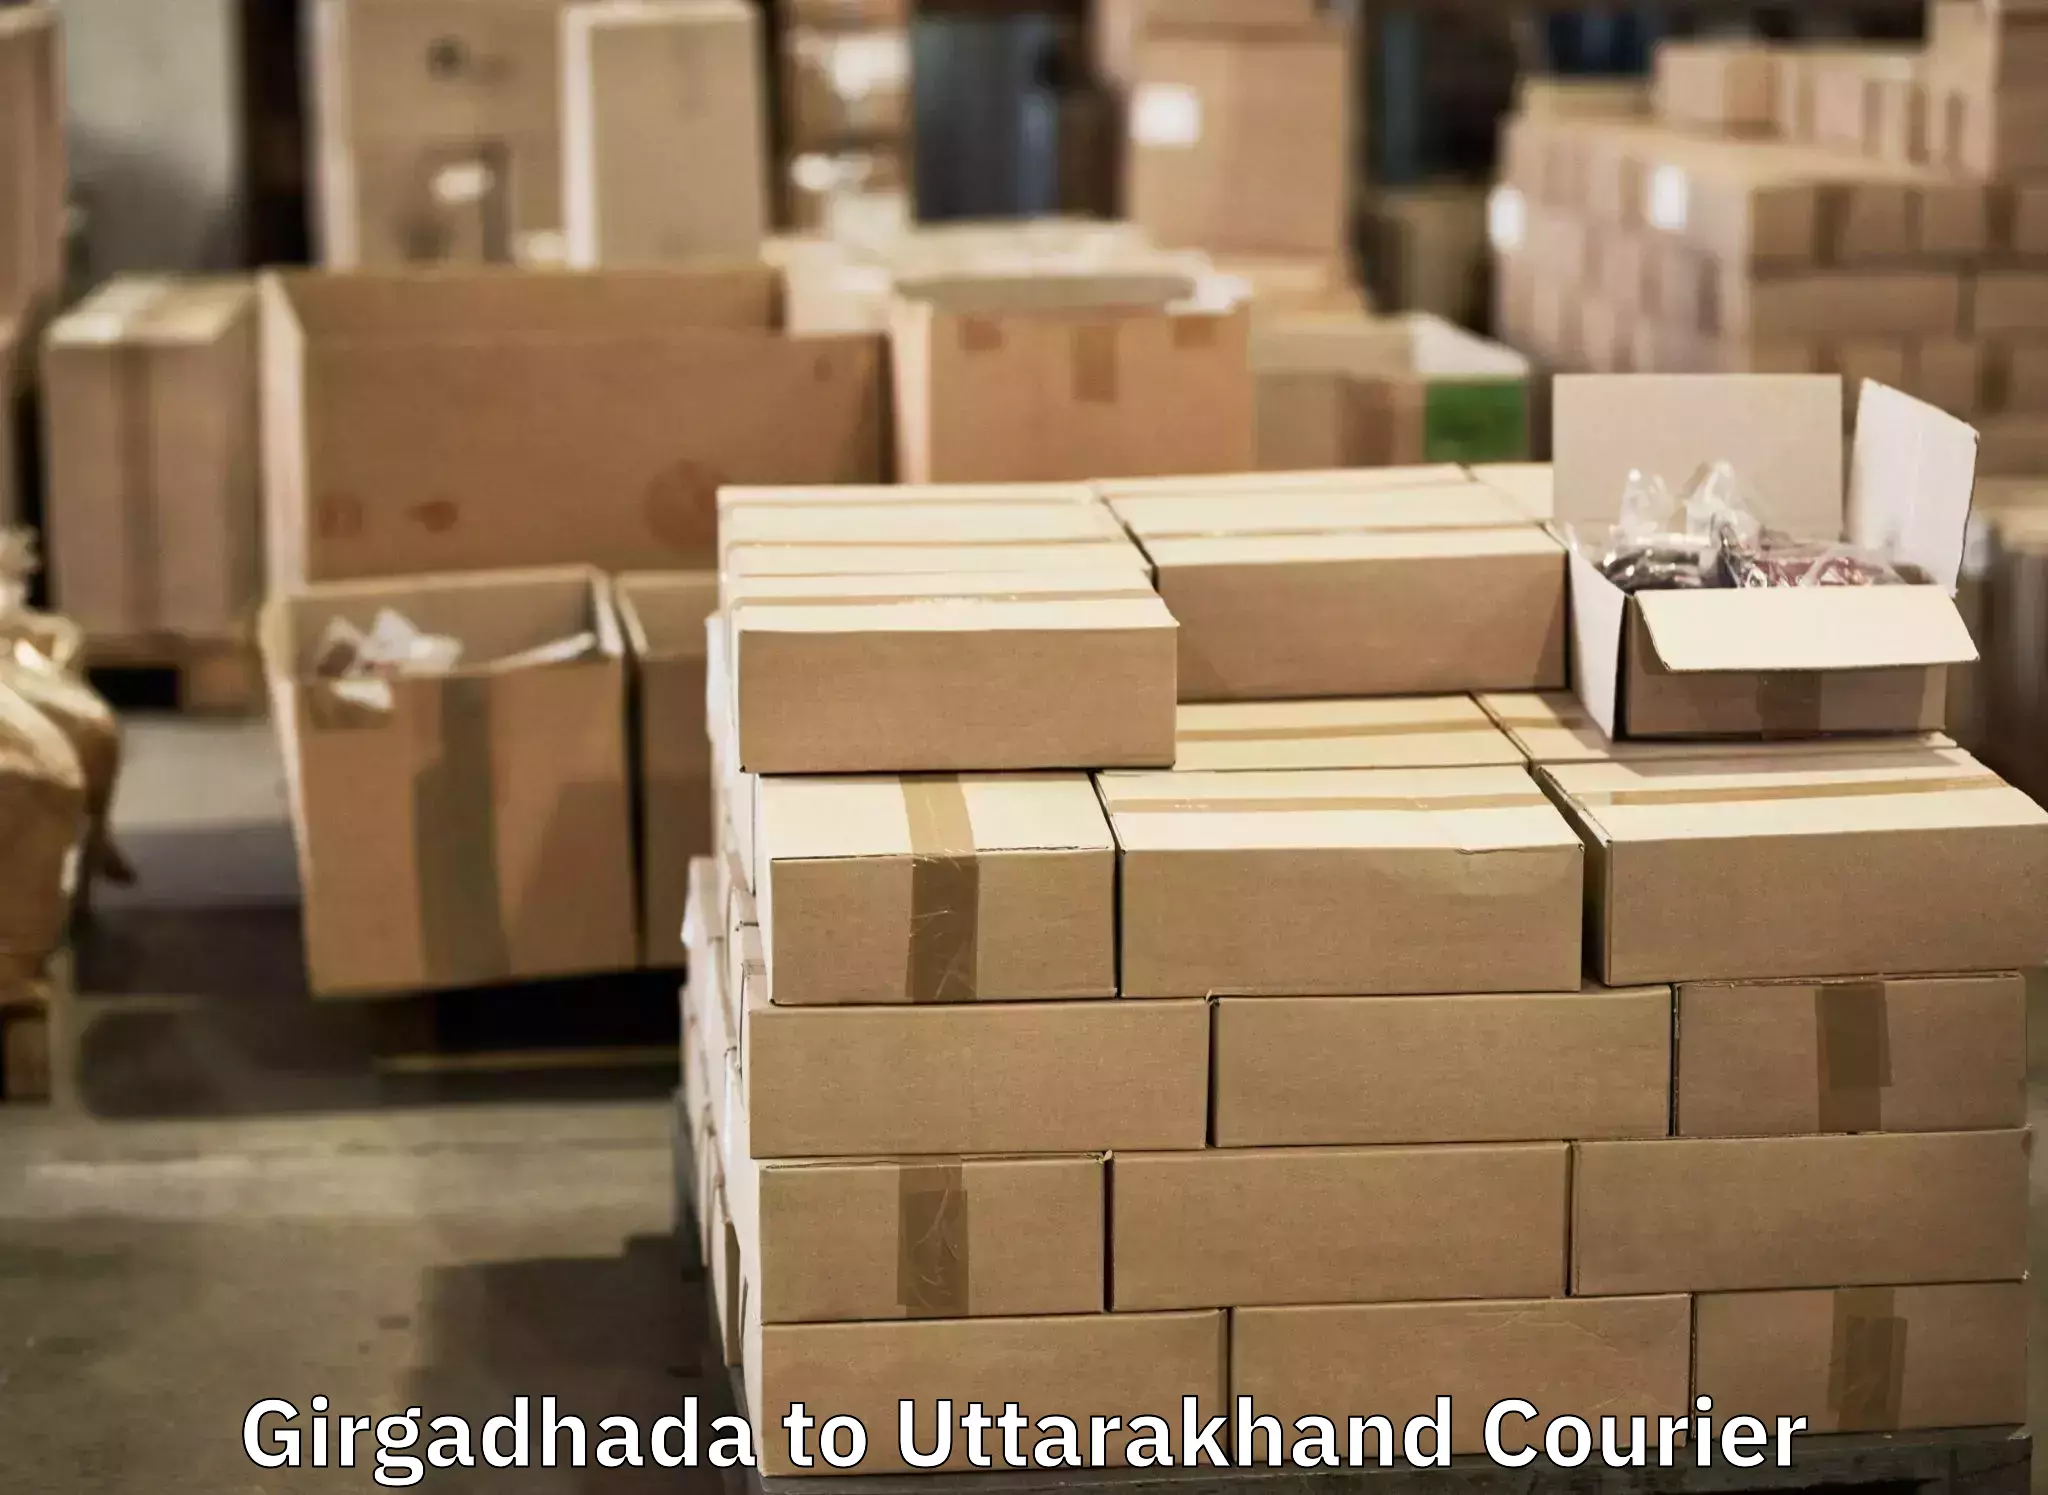 Luggage transport company Girgadhada to Uttarakhand